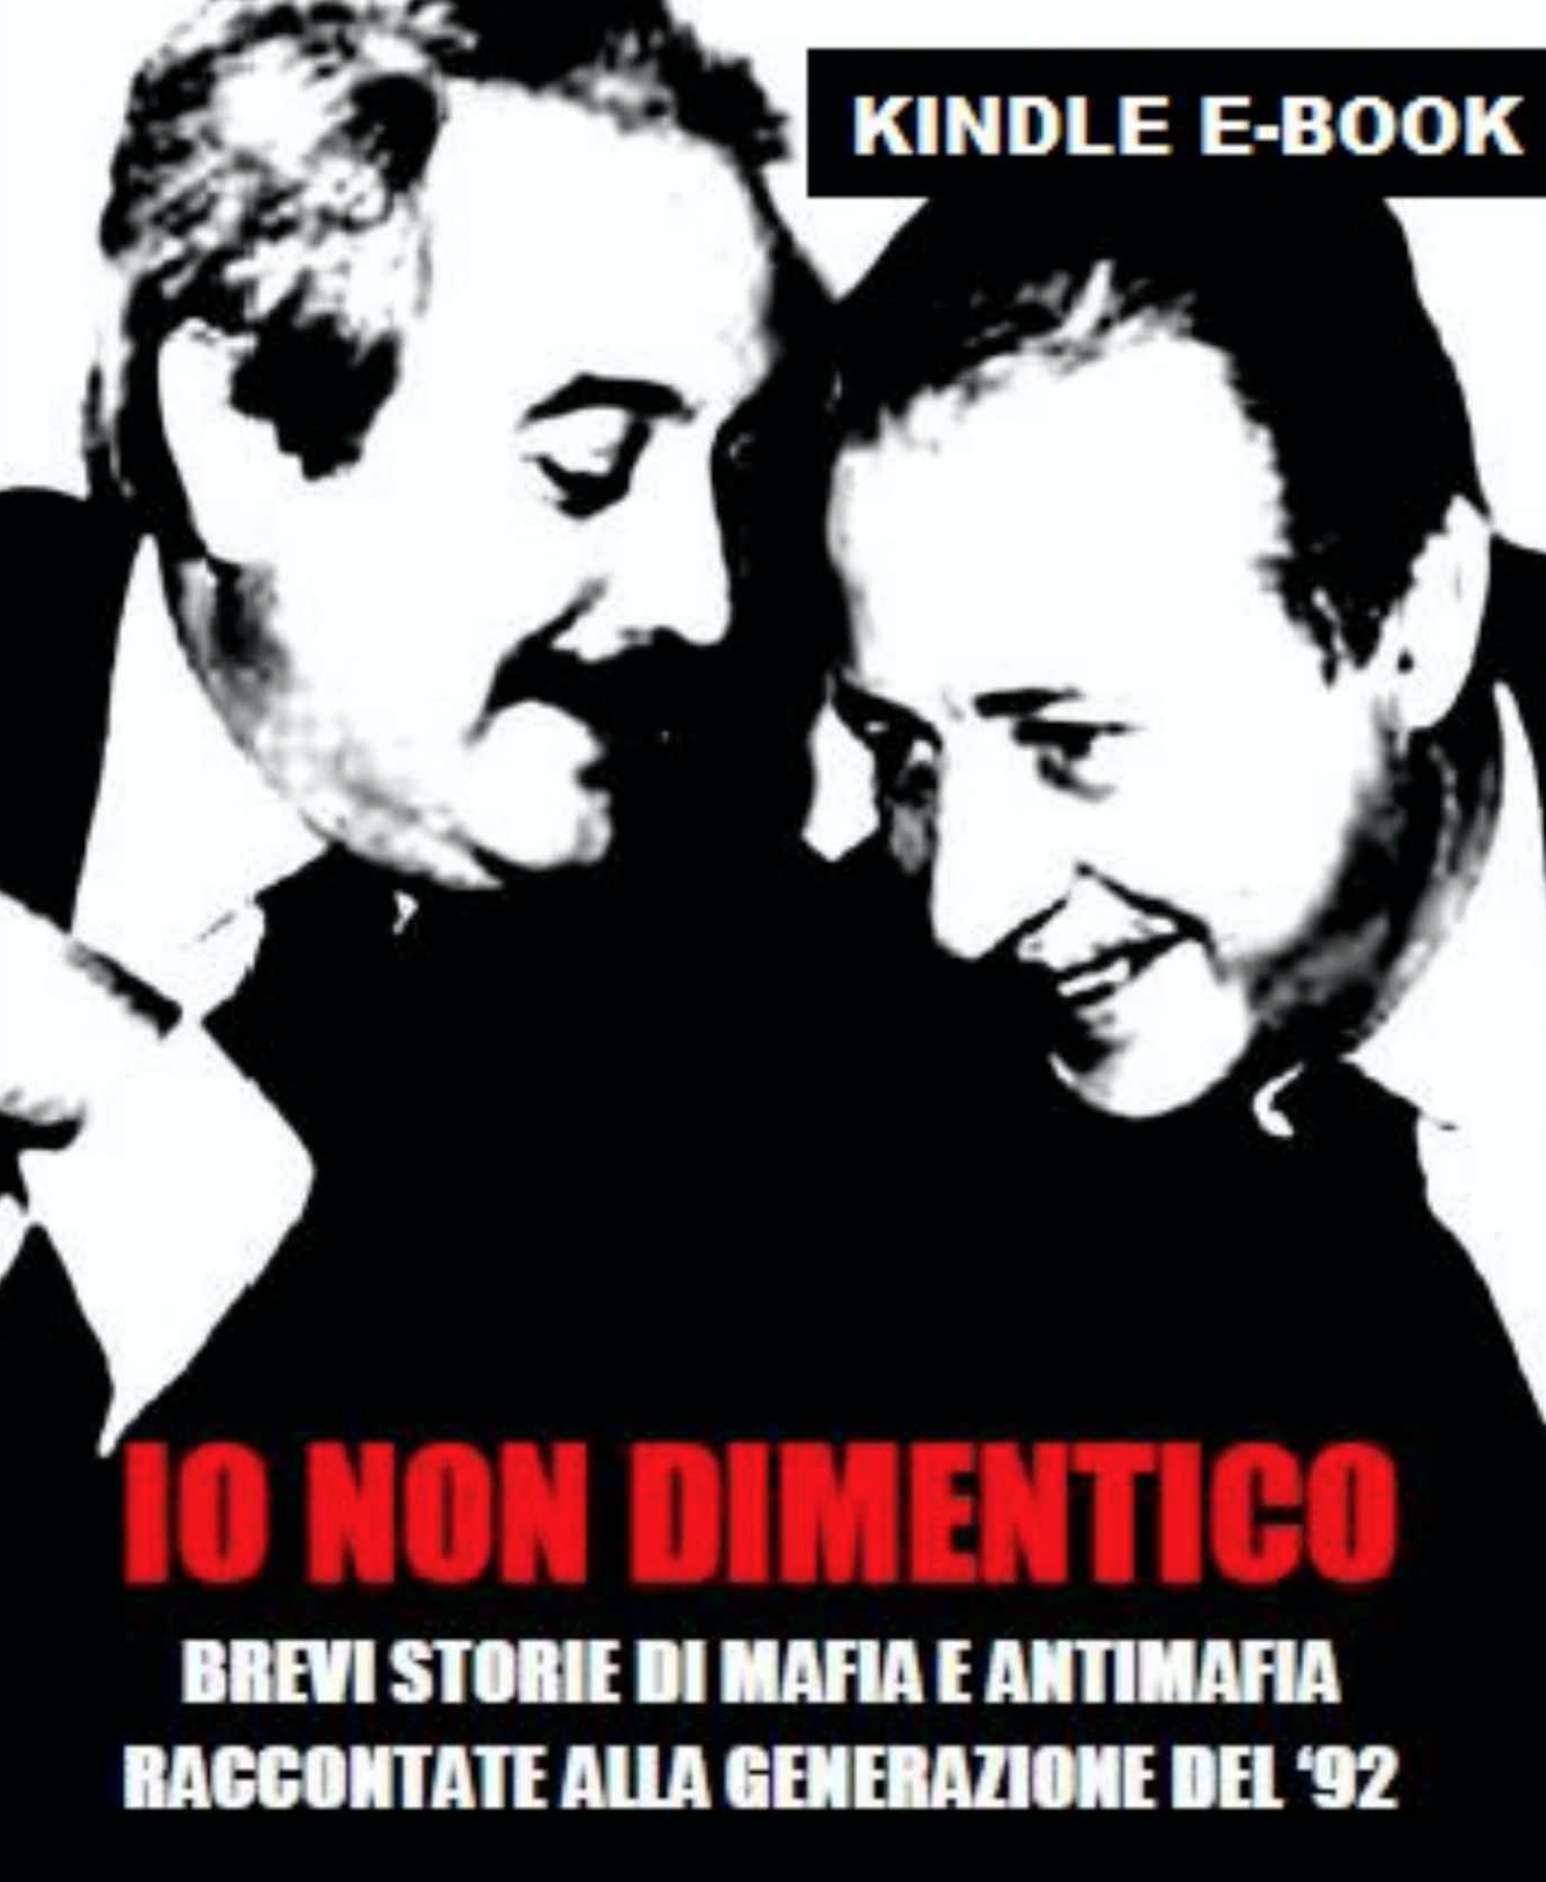 Définition du mot "Mafia" dans un dictionnaire italien et article instructif du "Monde" sur le Petit Bar